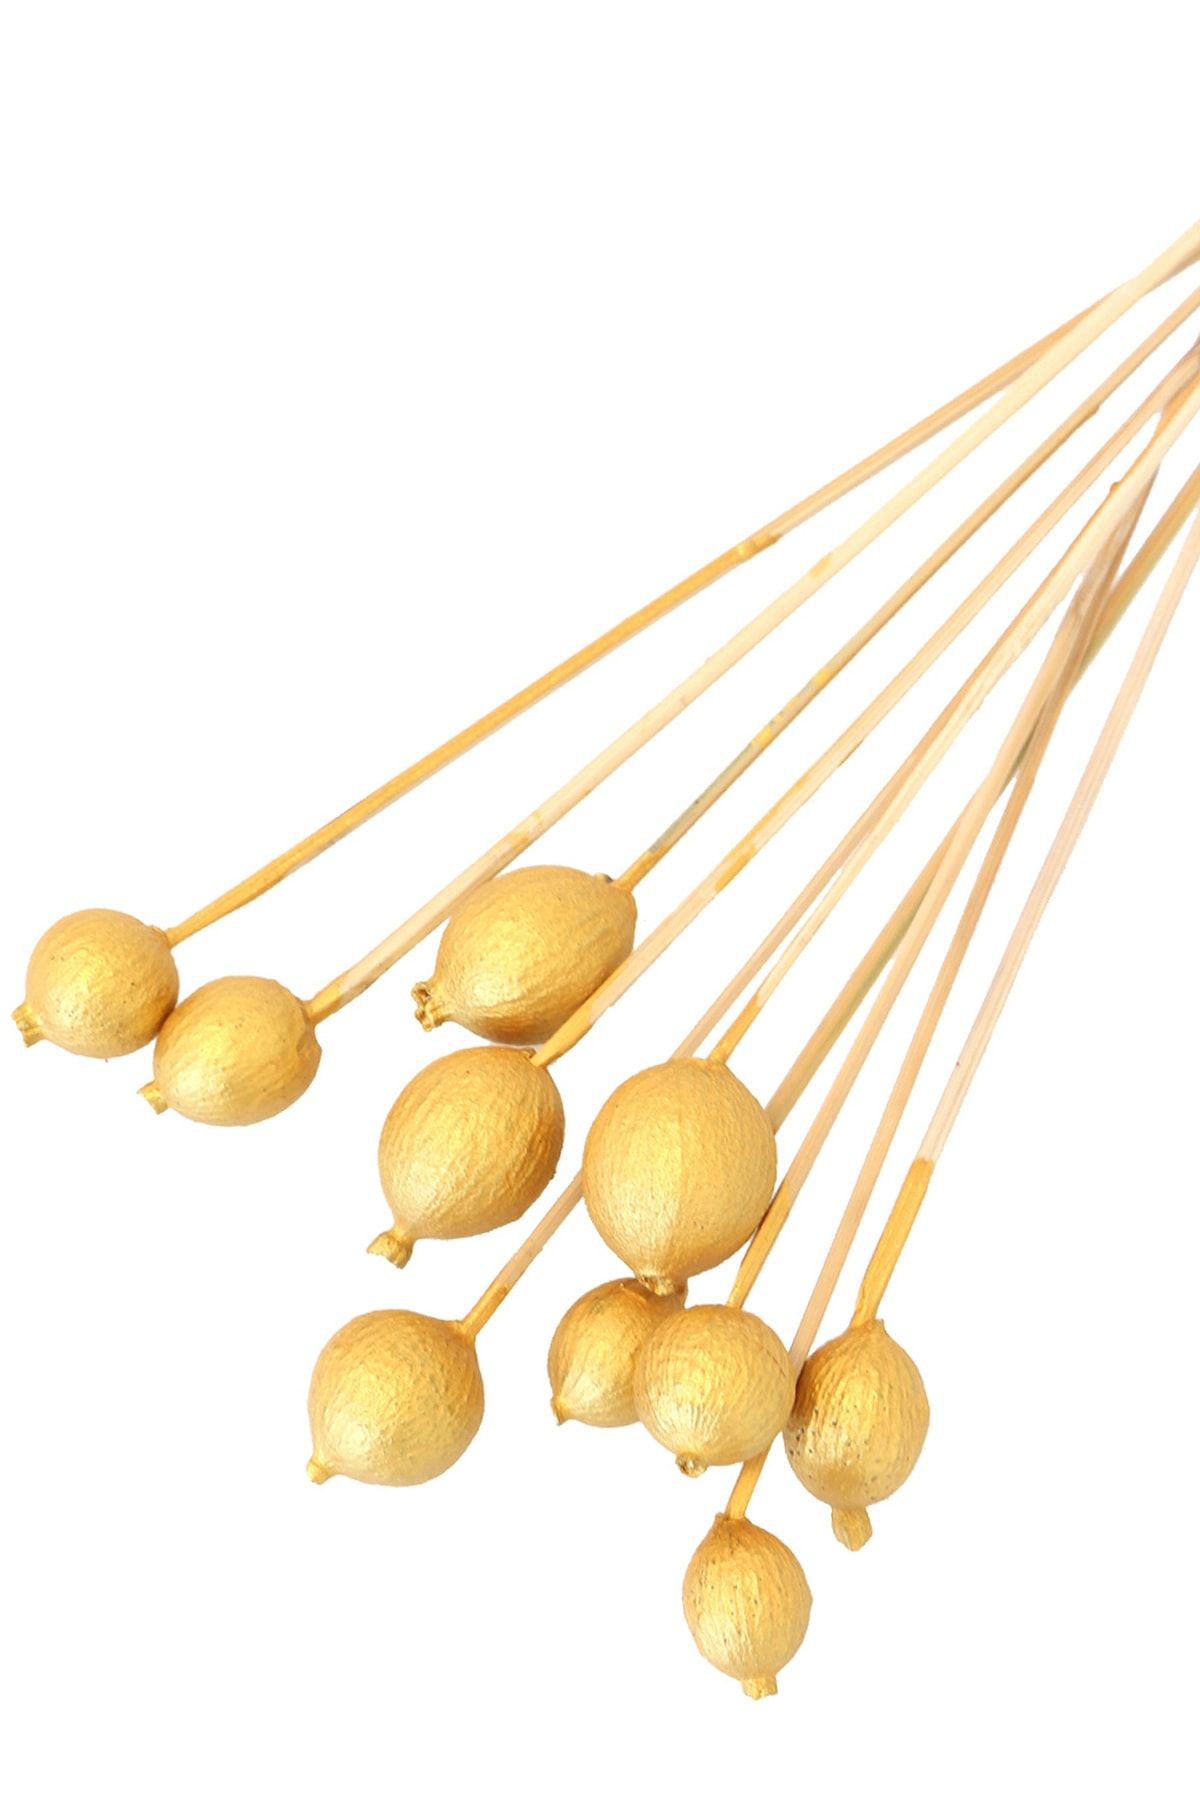 Yapay Çiçek Deposu 10Lu Gauri Fruit On Steam Gold Altın Renk Gold